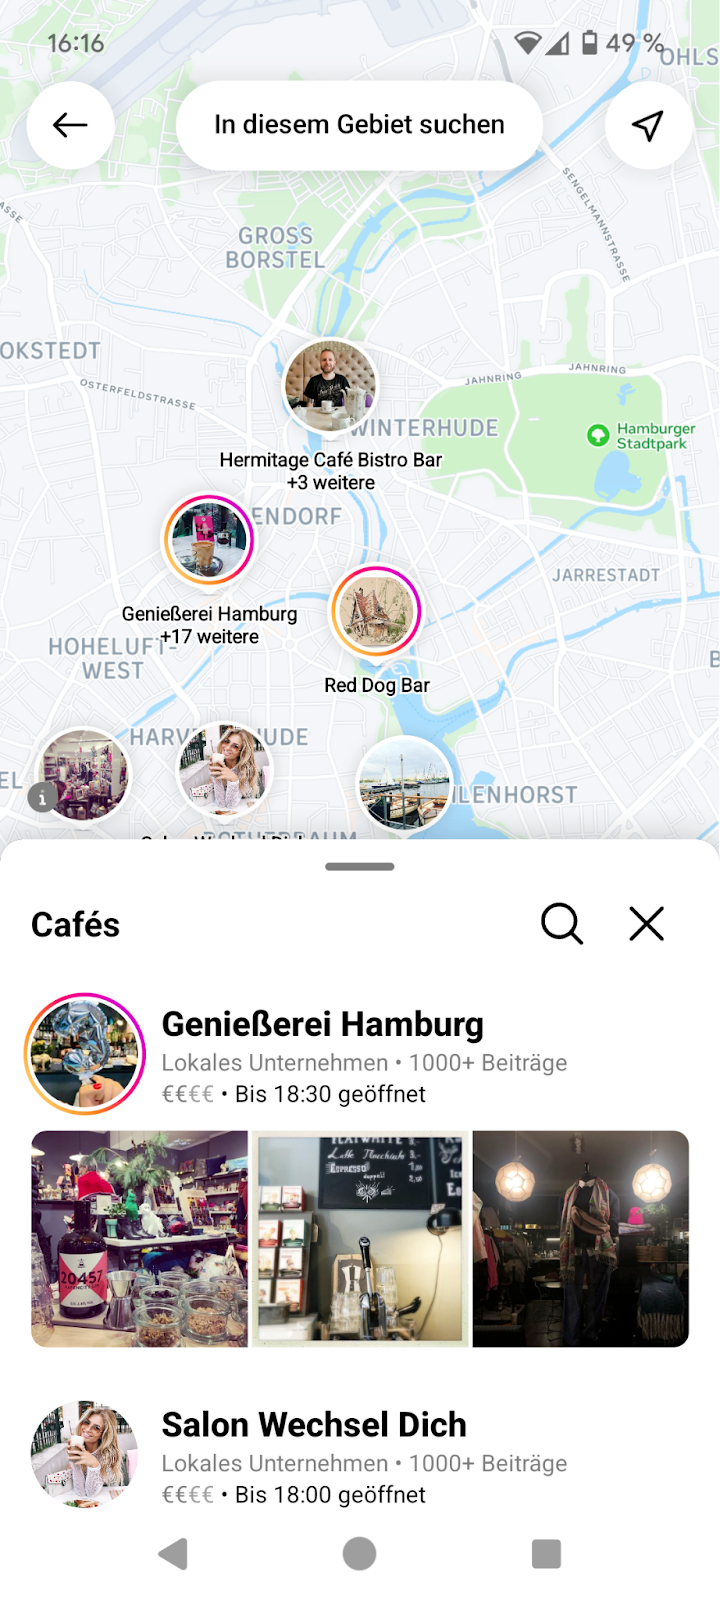 Ein Screenshot aus der Instagram App. Zu sehen ist eine Karteneinbindung von Hamburg und darunter eine Liste mit Cafés. Auf der Karte sind kreisförmige Einblendungen zu sehen, die signalisieren, dass es Stories zu diesen Cafés gibt.